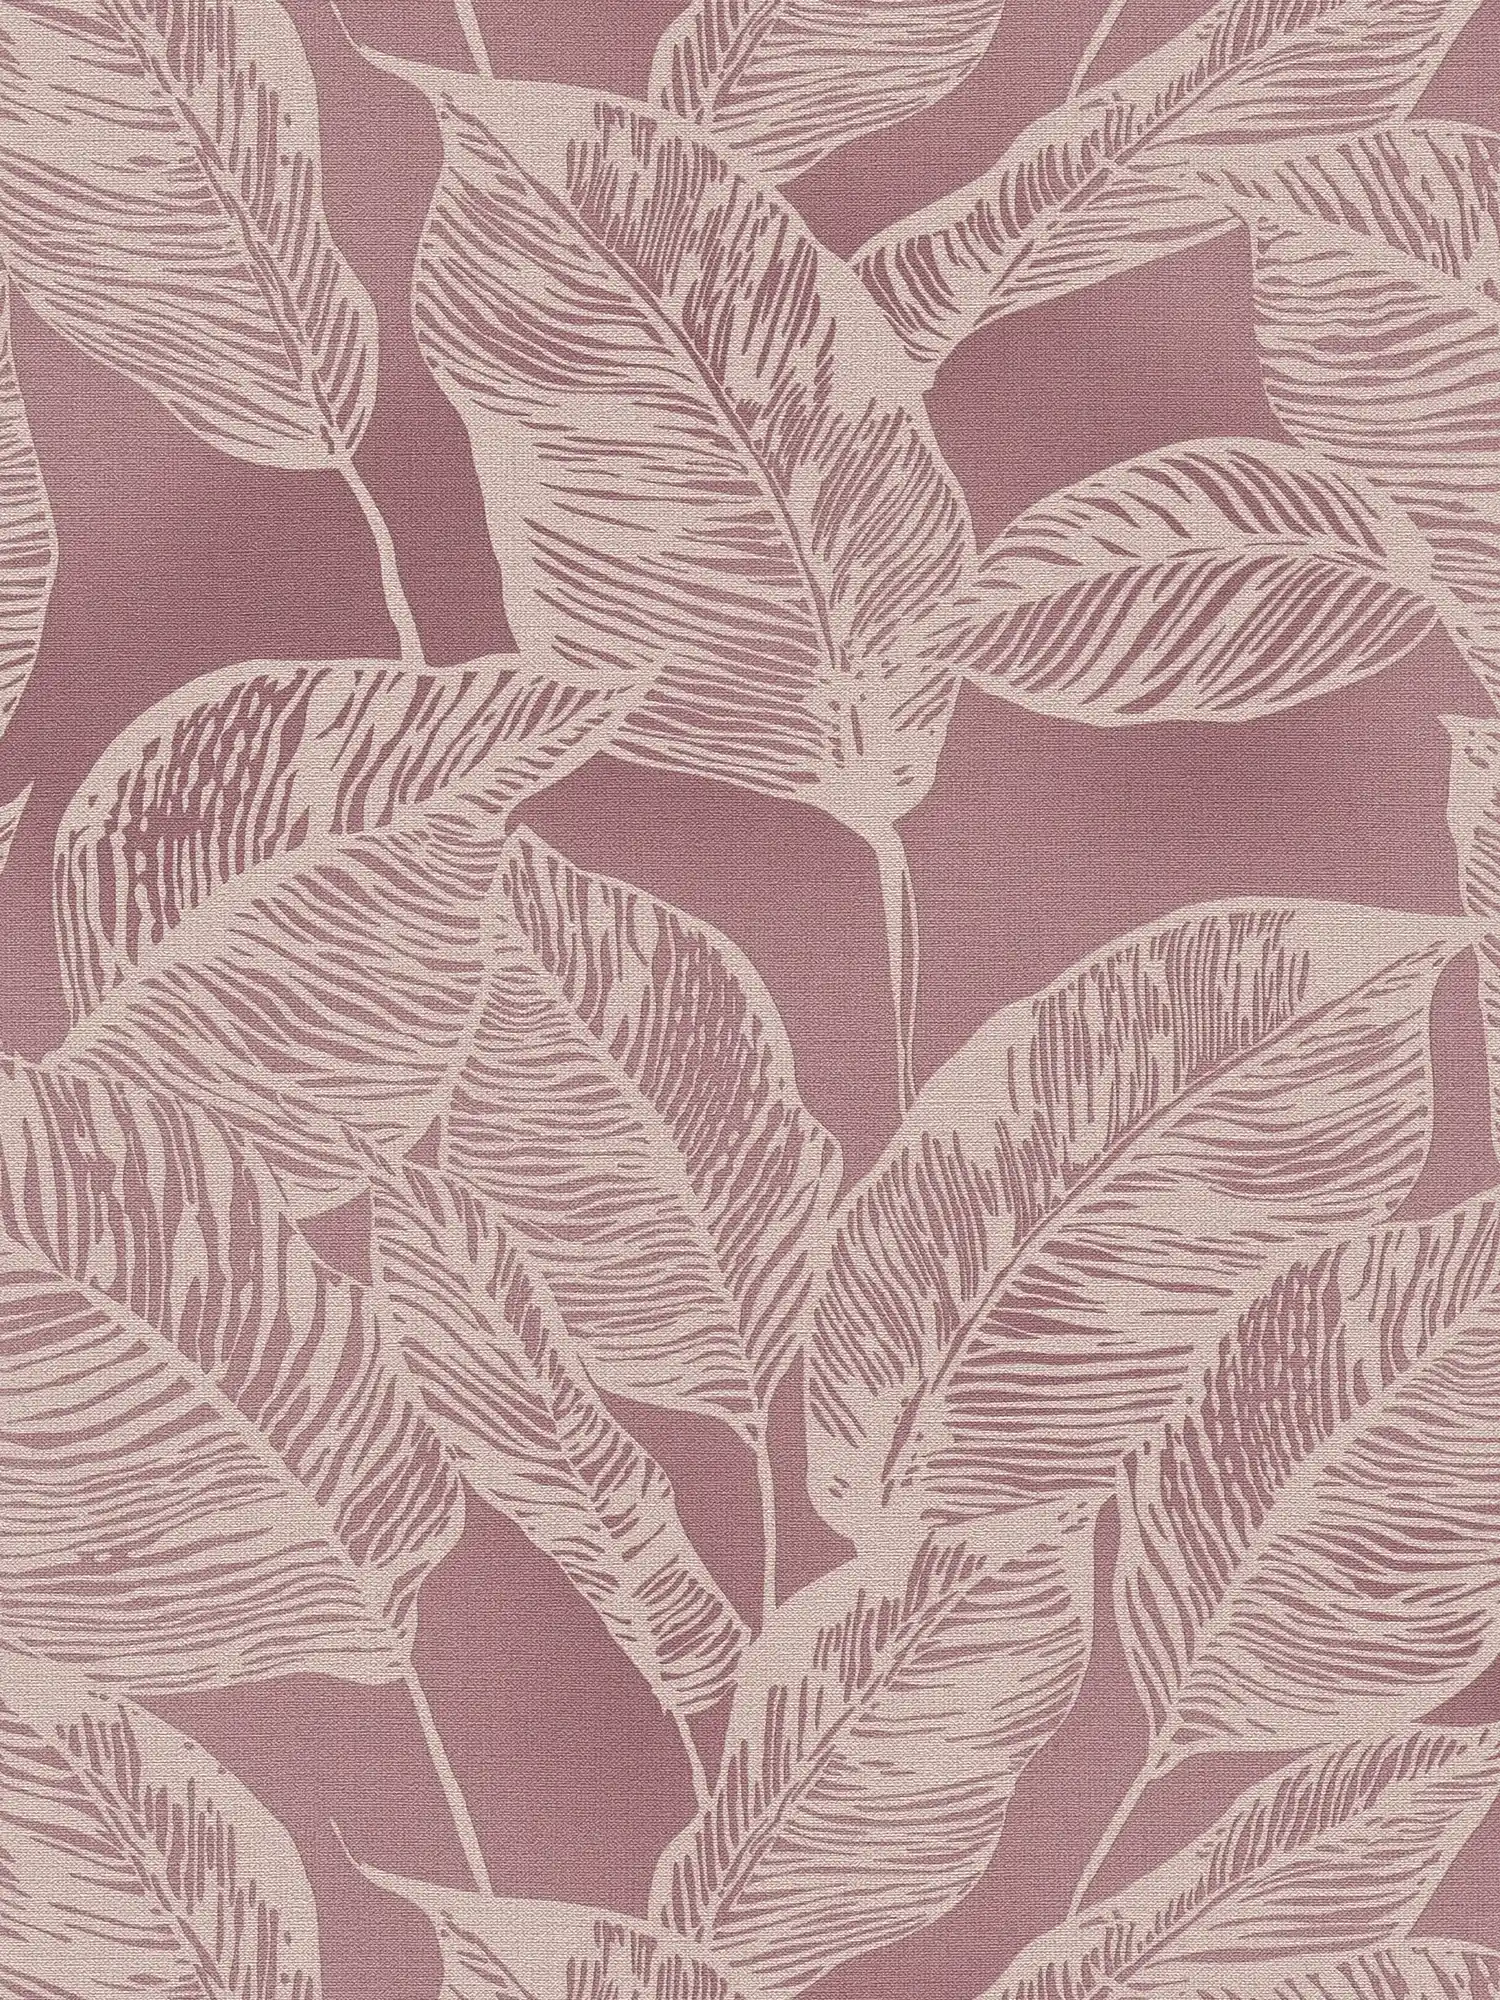 Papier peint intissé sans PVC avec motif de feuilles - rose, crème
